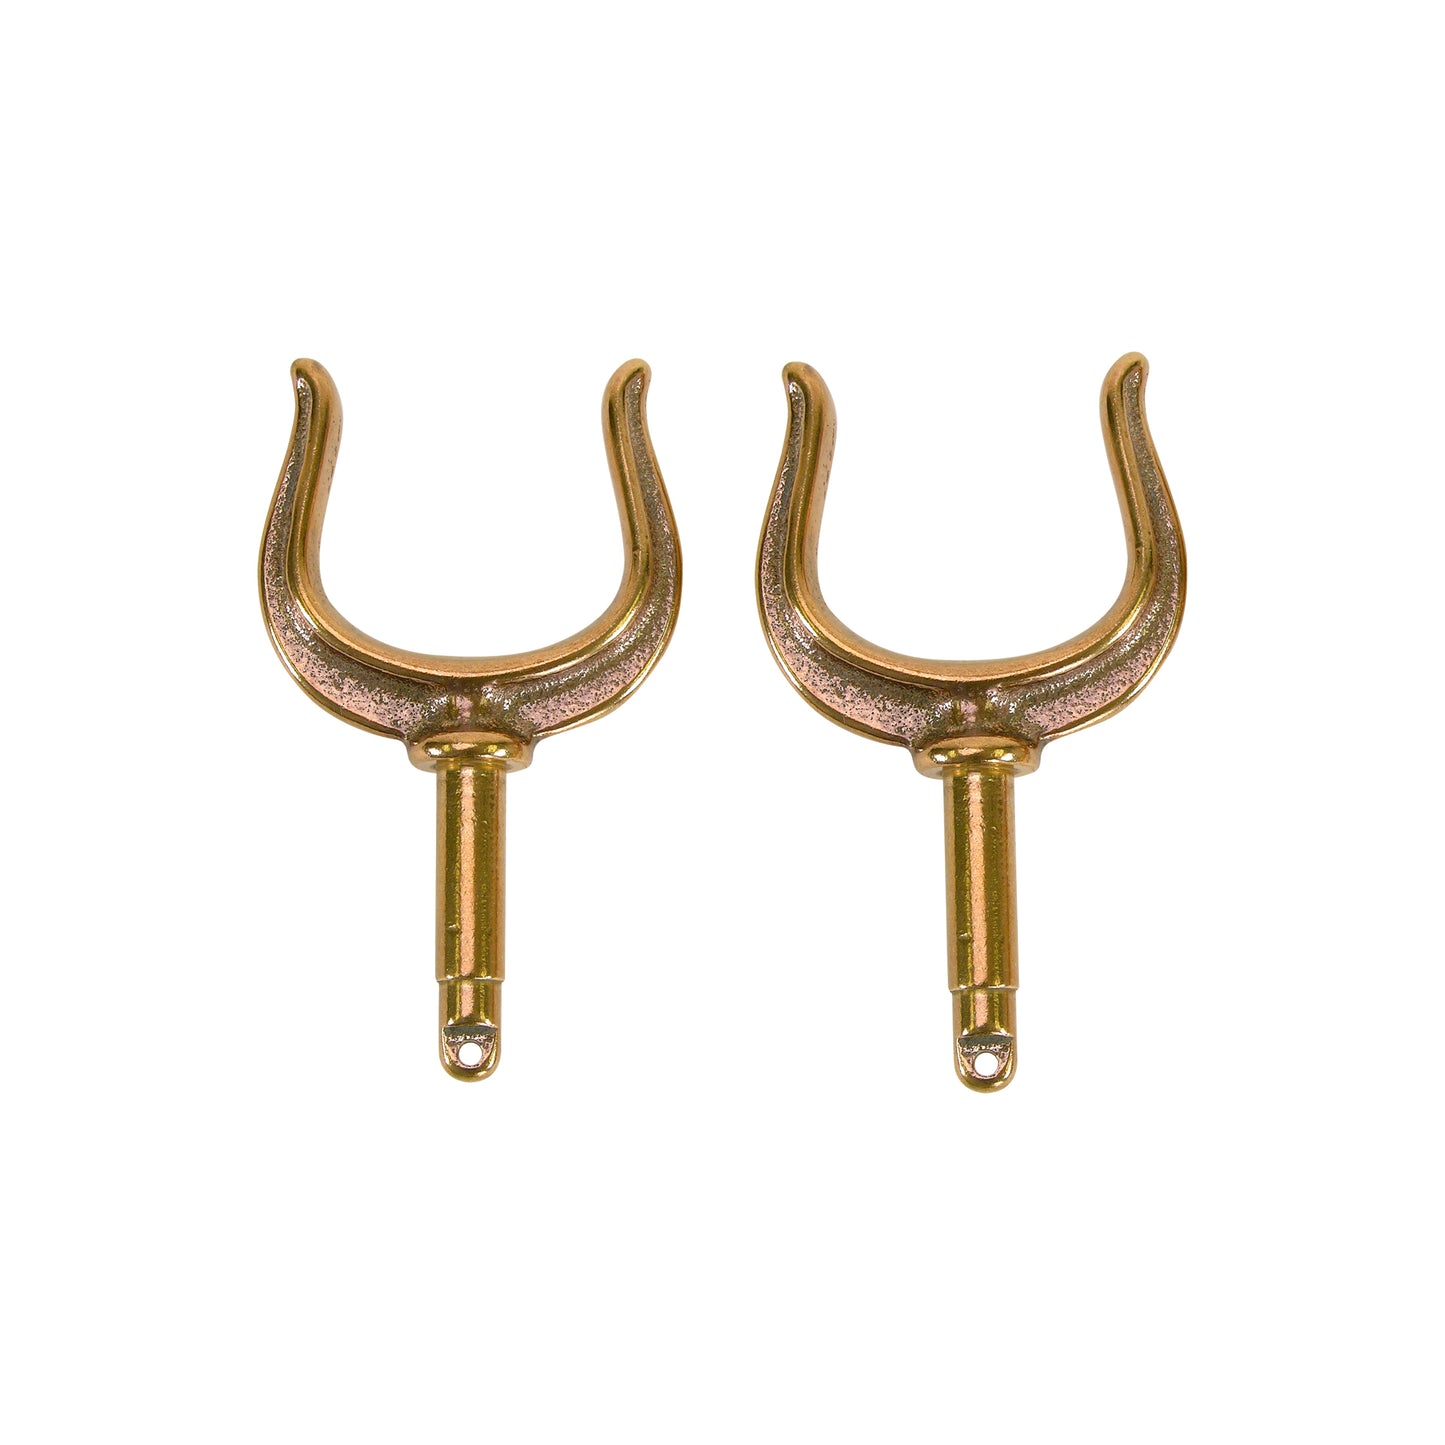 Ribbed Oarlock Horns (1-7/8") - S-3538